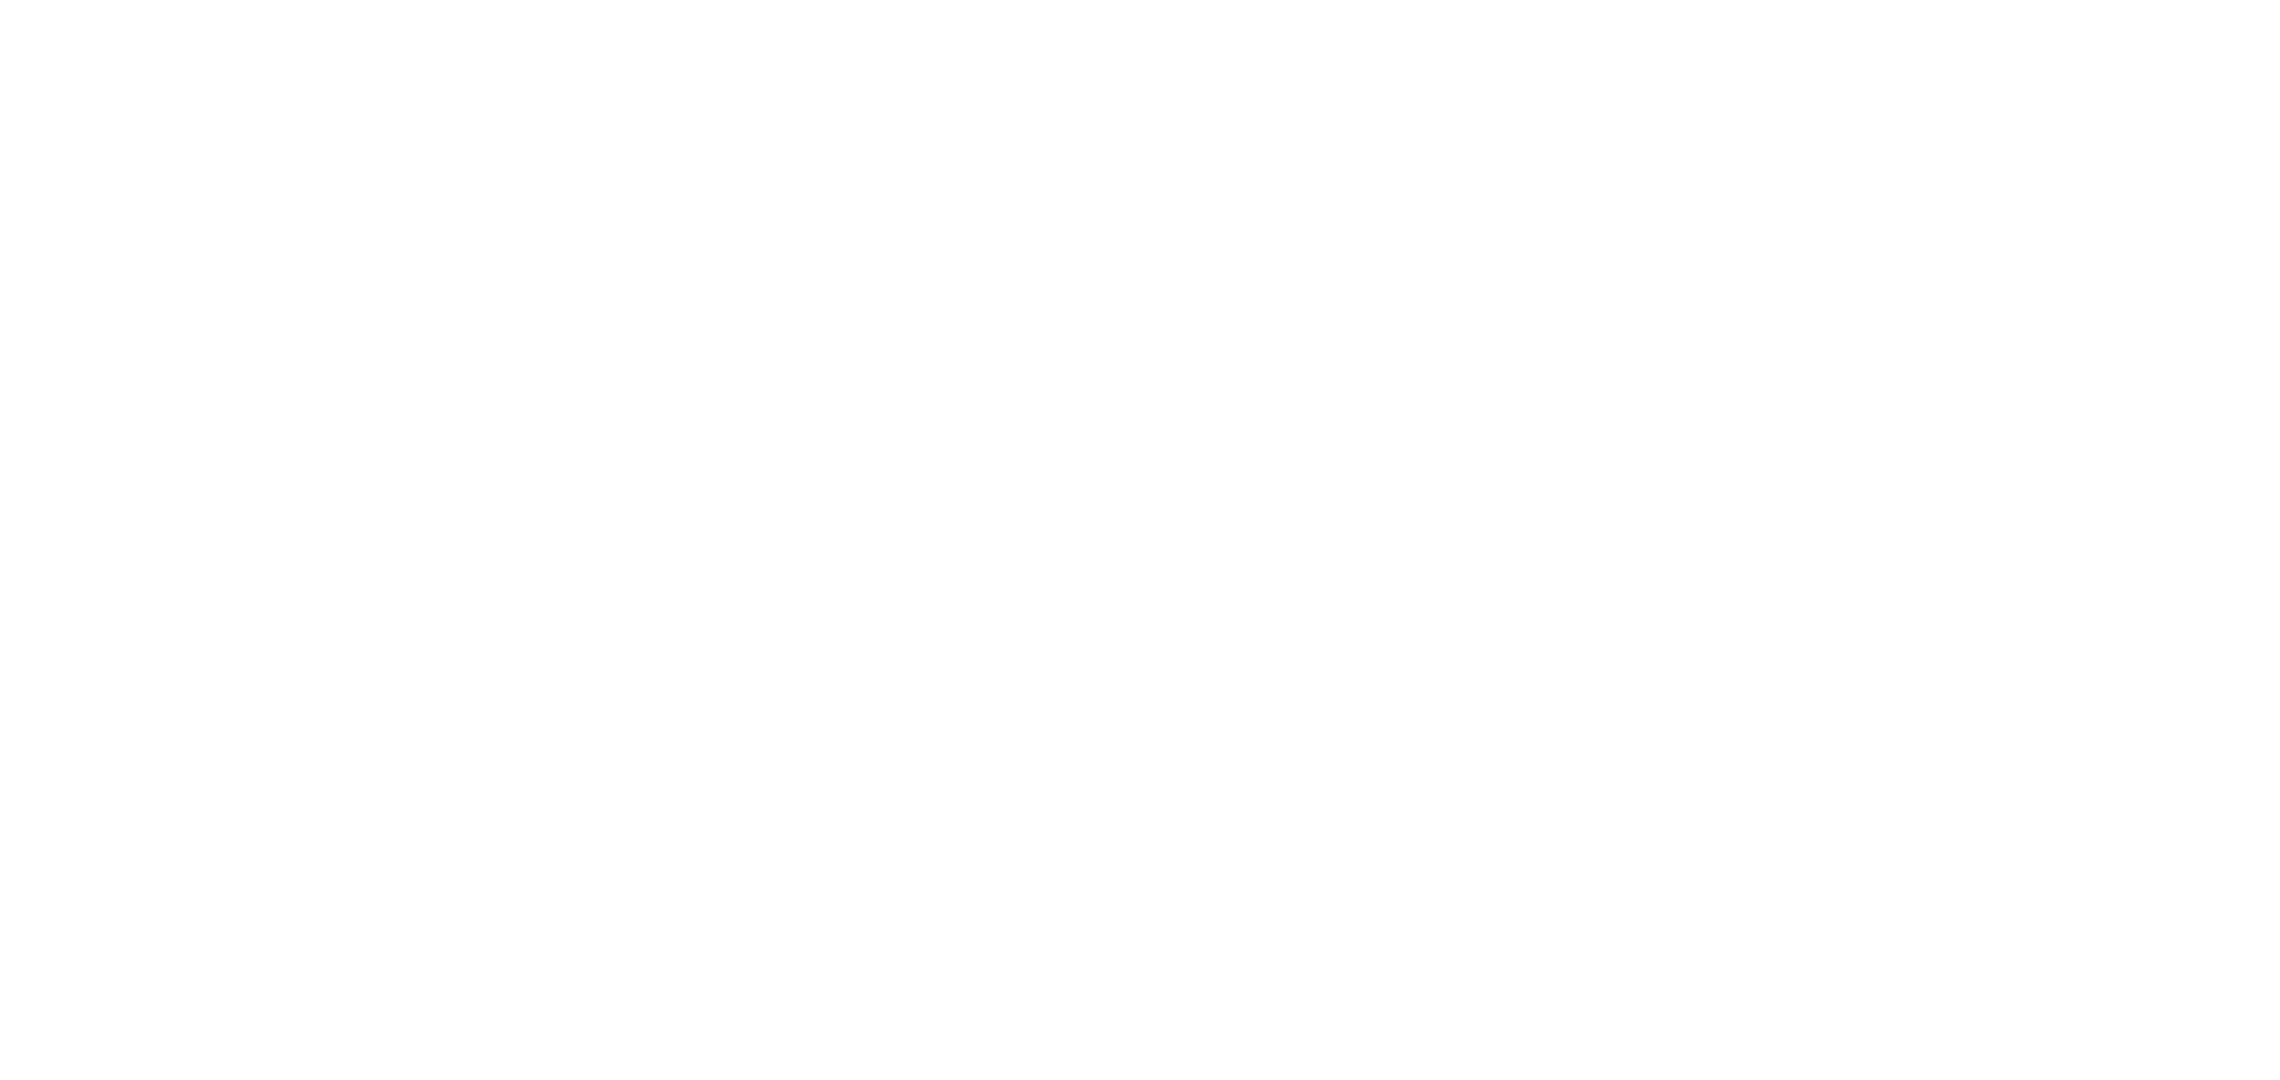 Bouw- en Onderhoudsbedrijf Amadeus